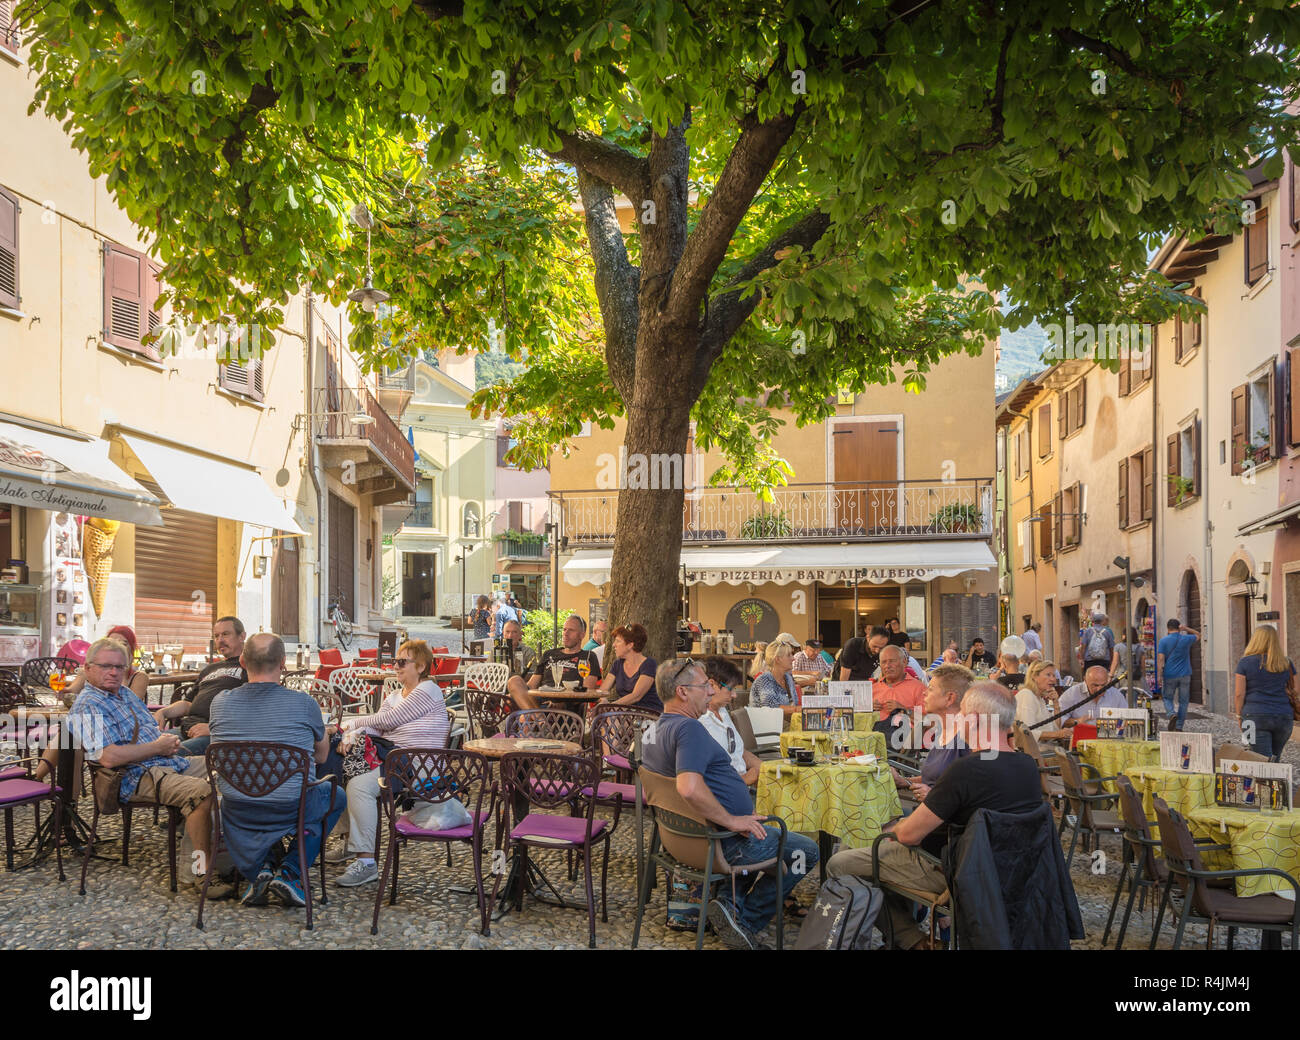 Café de la rue dans le centre du village médiéval de Malcesine. C'est l'une des villes les plus caractéristiques du lac de garde dans la province de Vérone, en Italie. Banque D'Images